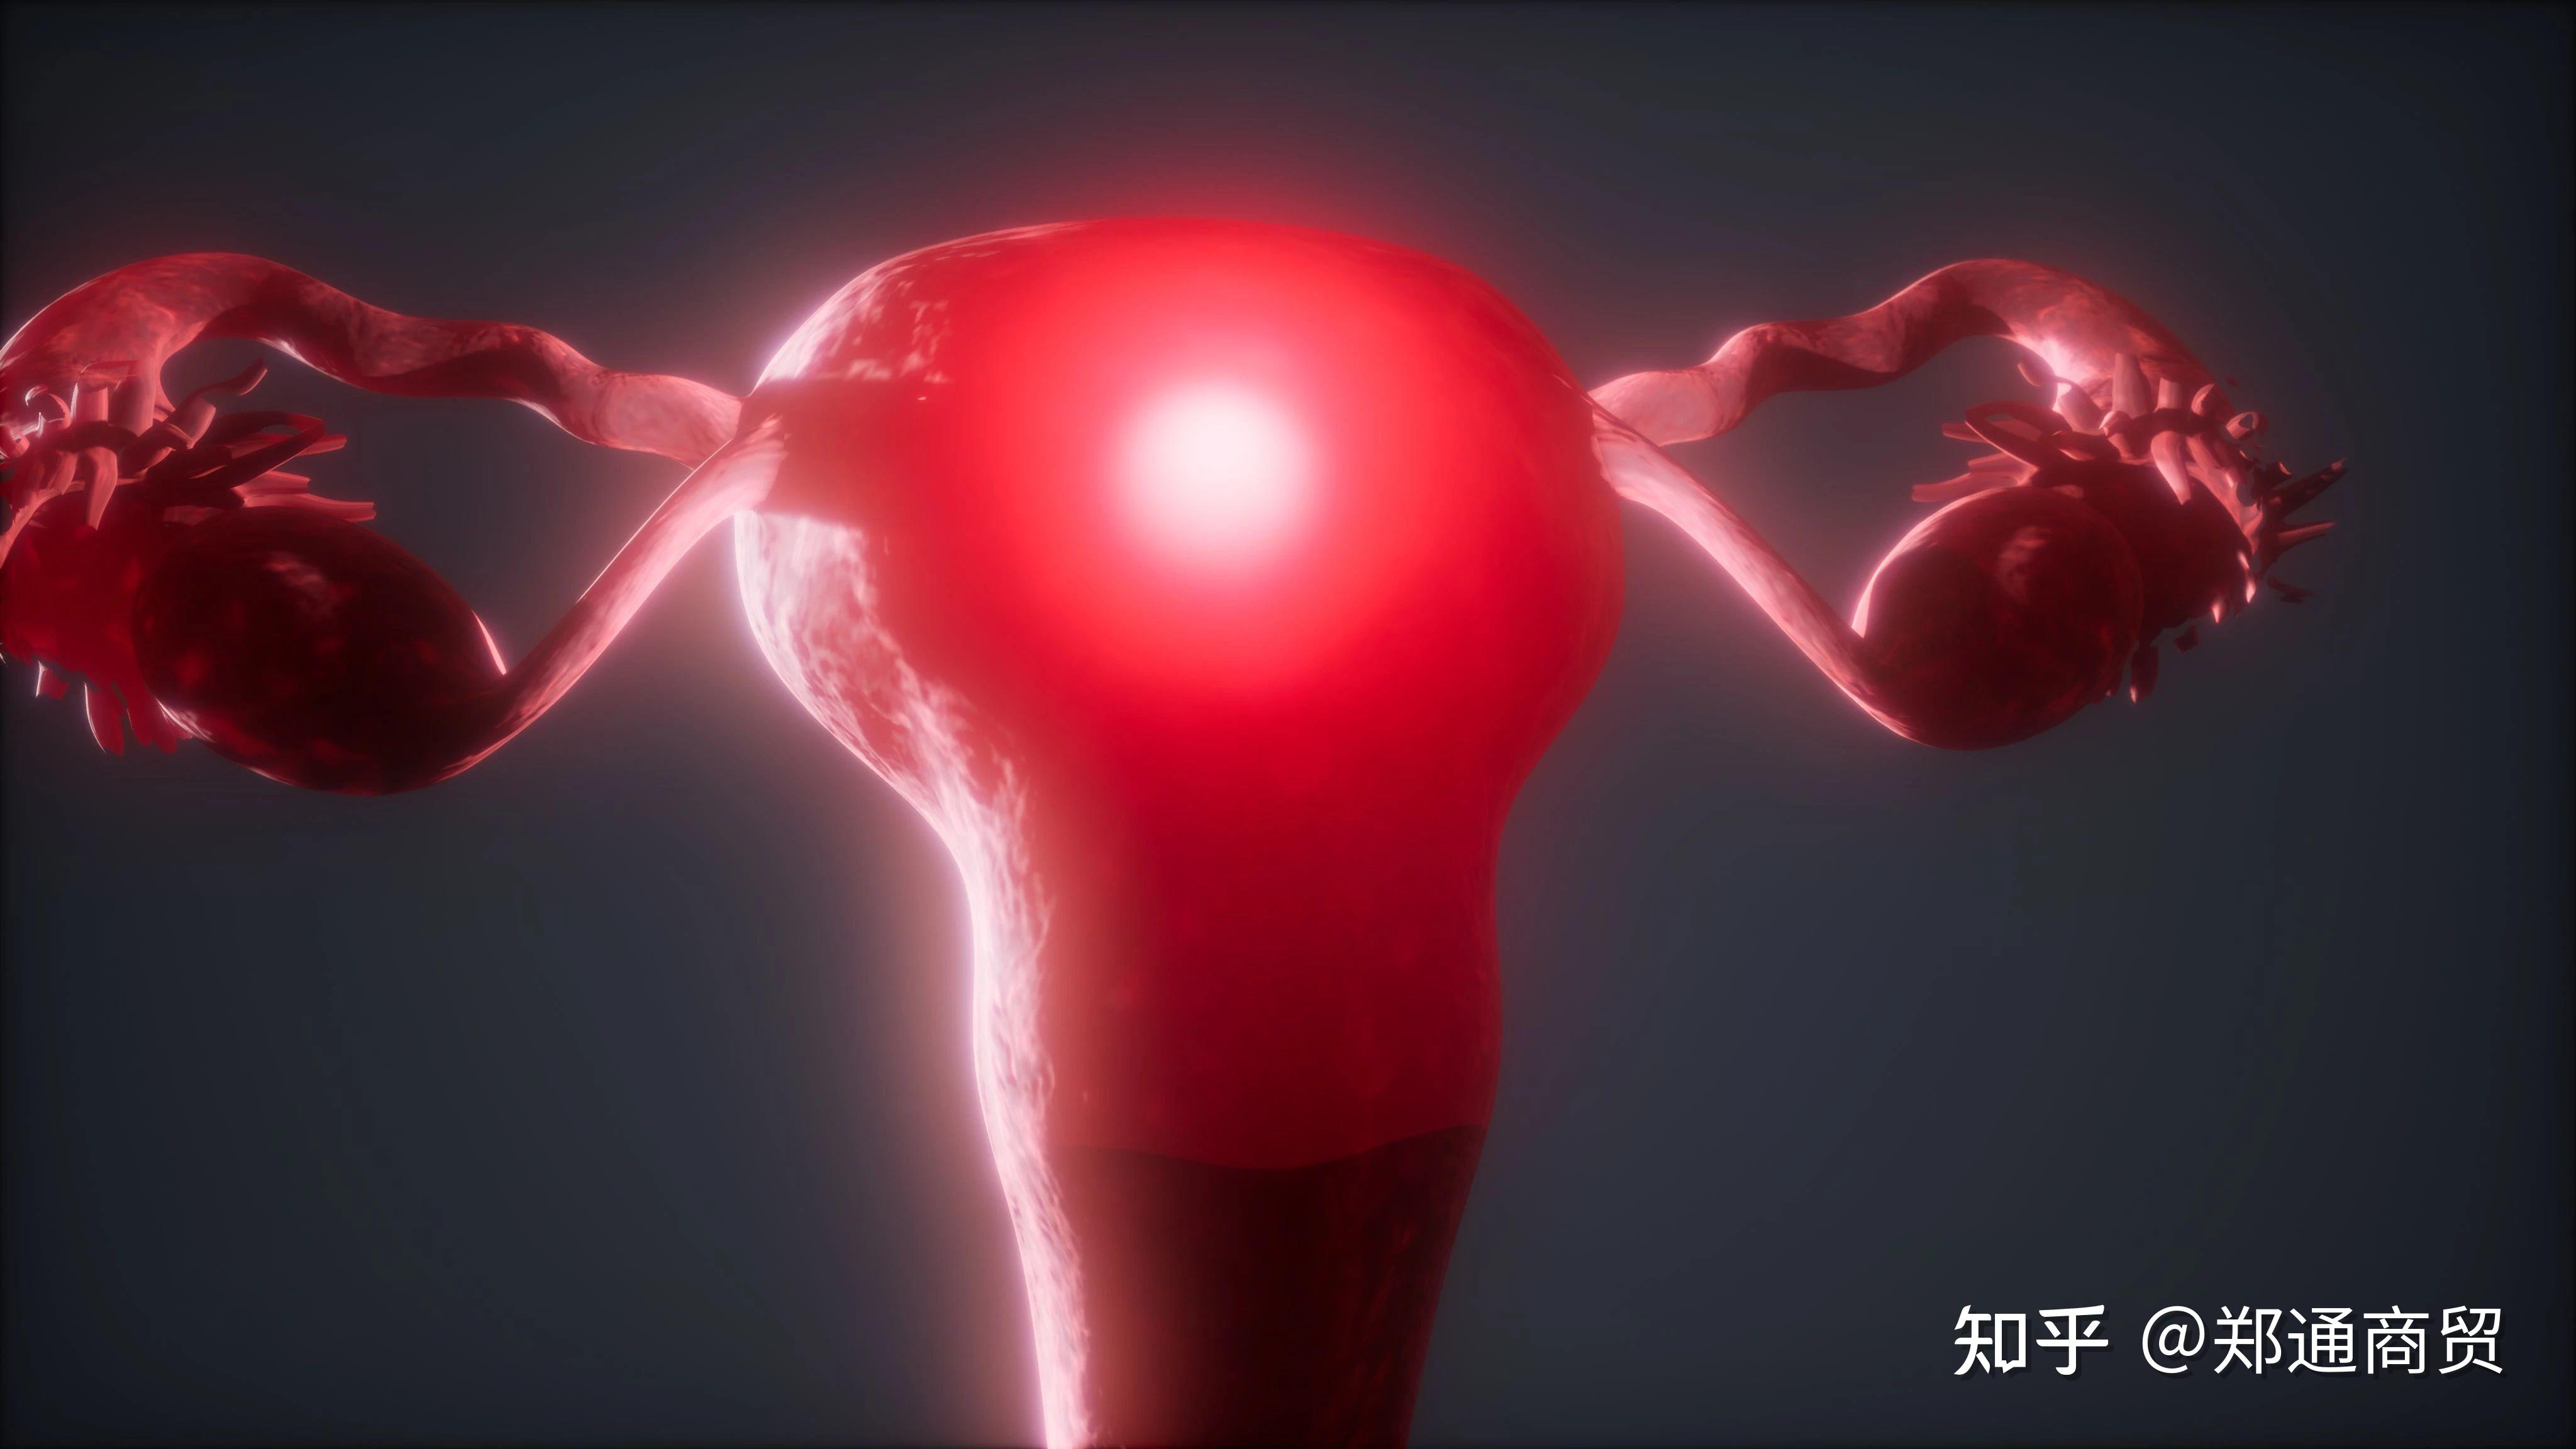 女性生殖器和男性生殖器主要区别是什么？ - 知乎